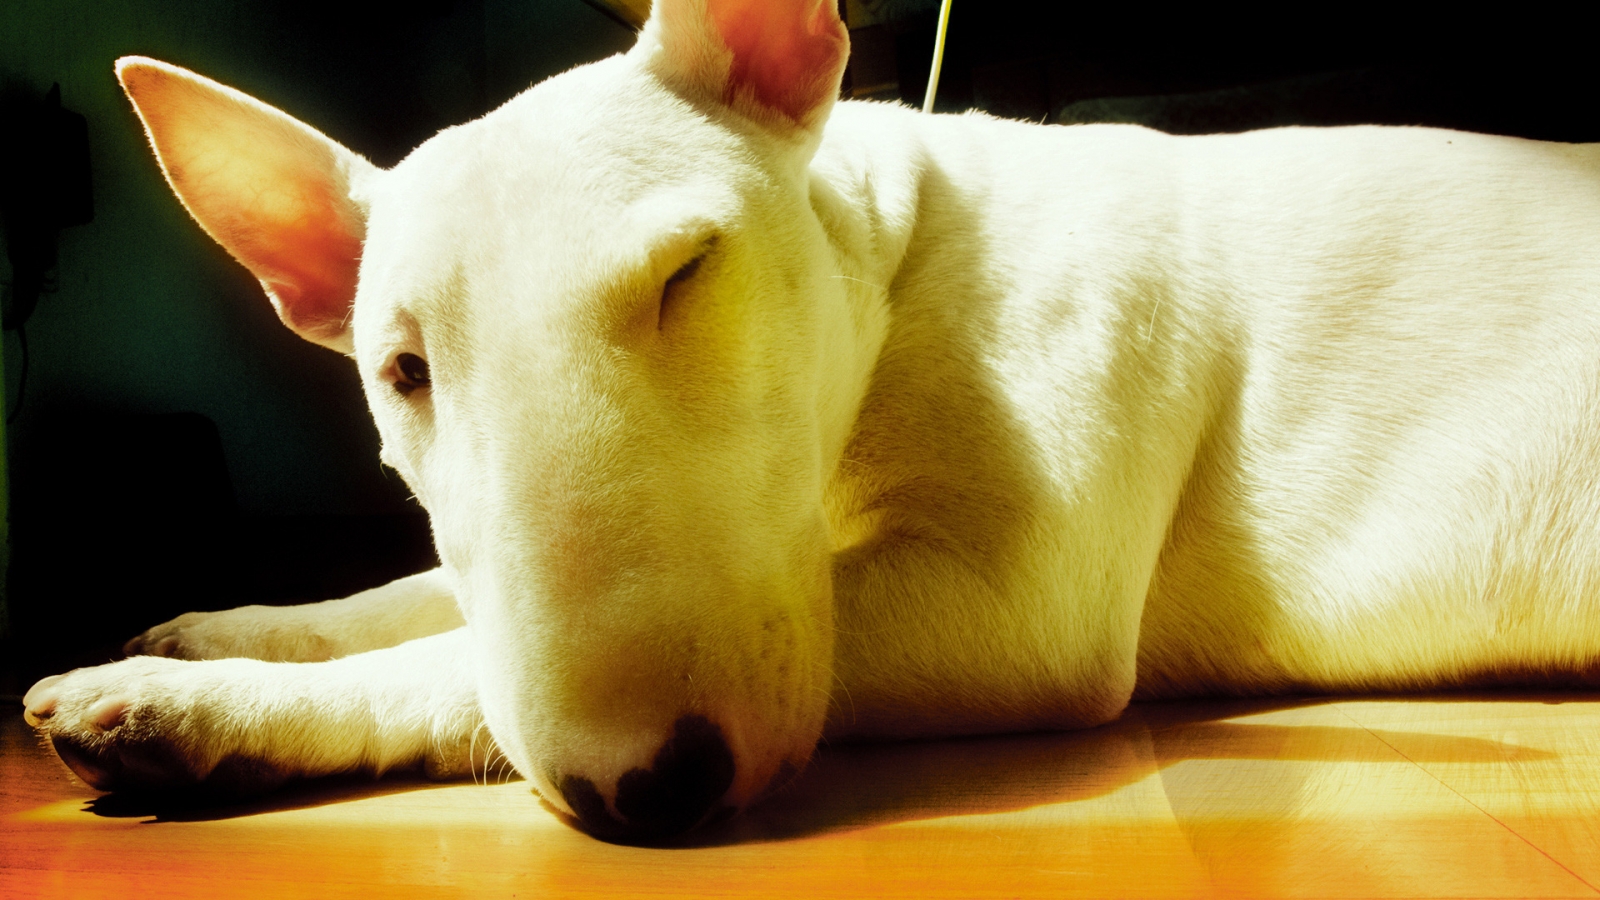 Cute Bull Terrier for 1600 x 900 HDTV resolution